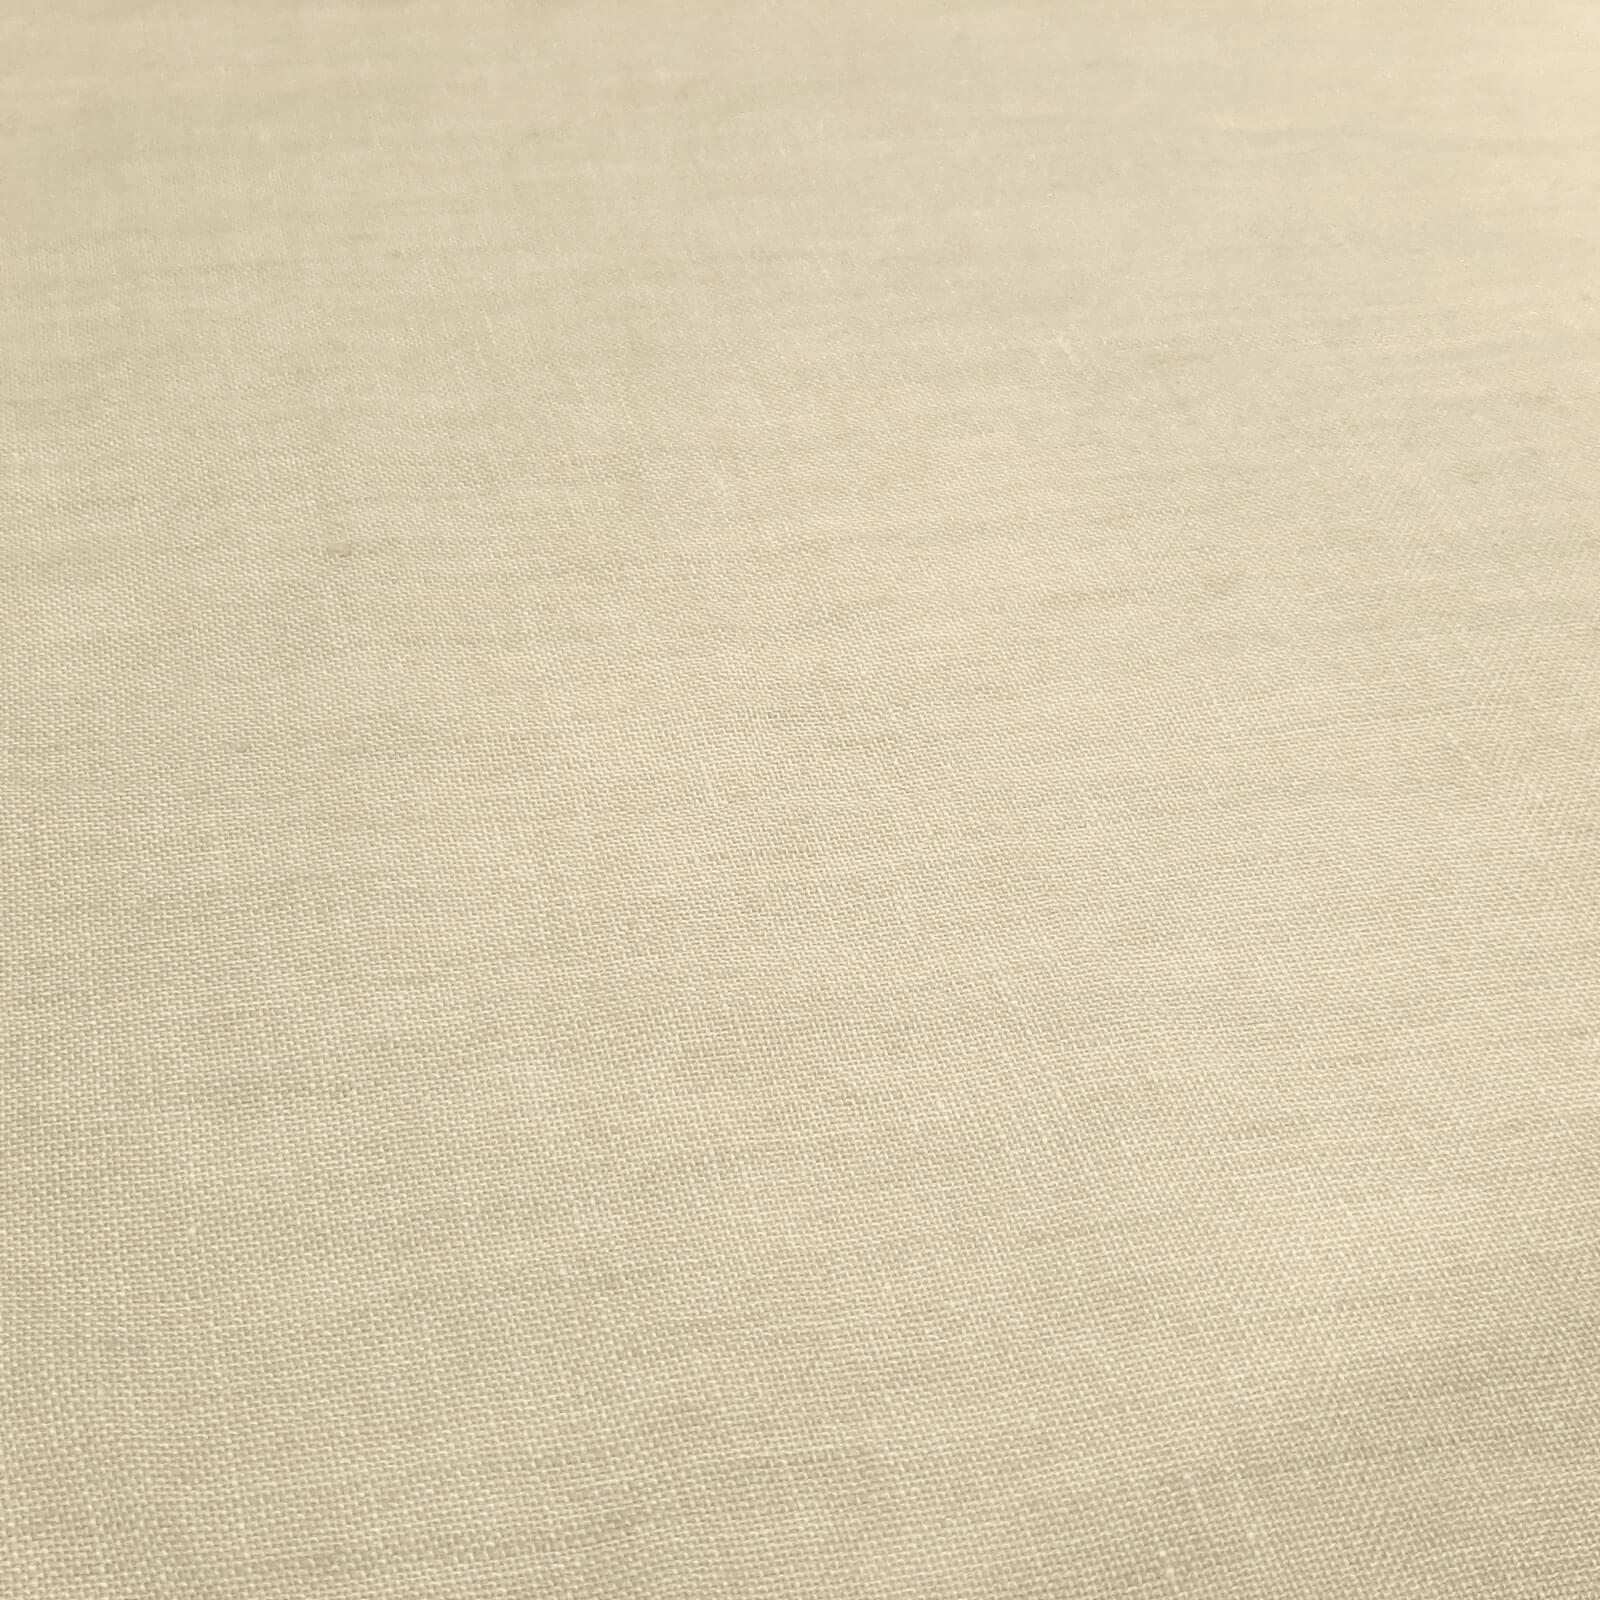 Kinnasand® Basato - dekorasjonsstoff i ekstra bredde 306cm - beige-natur